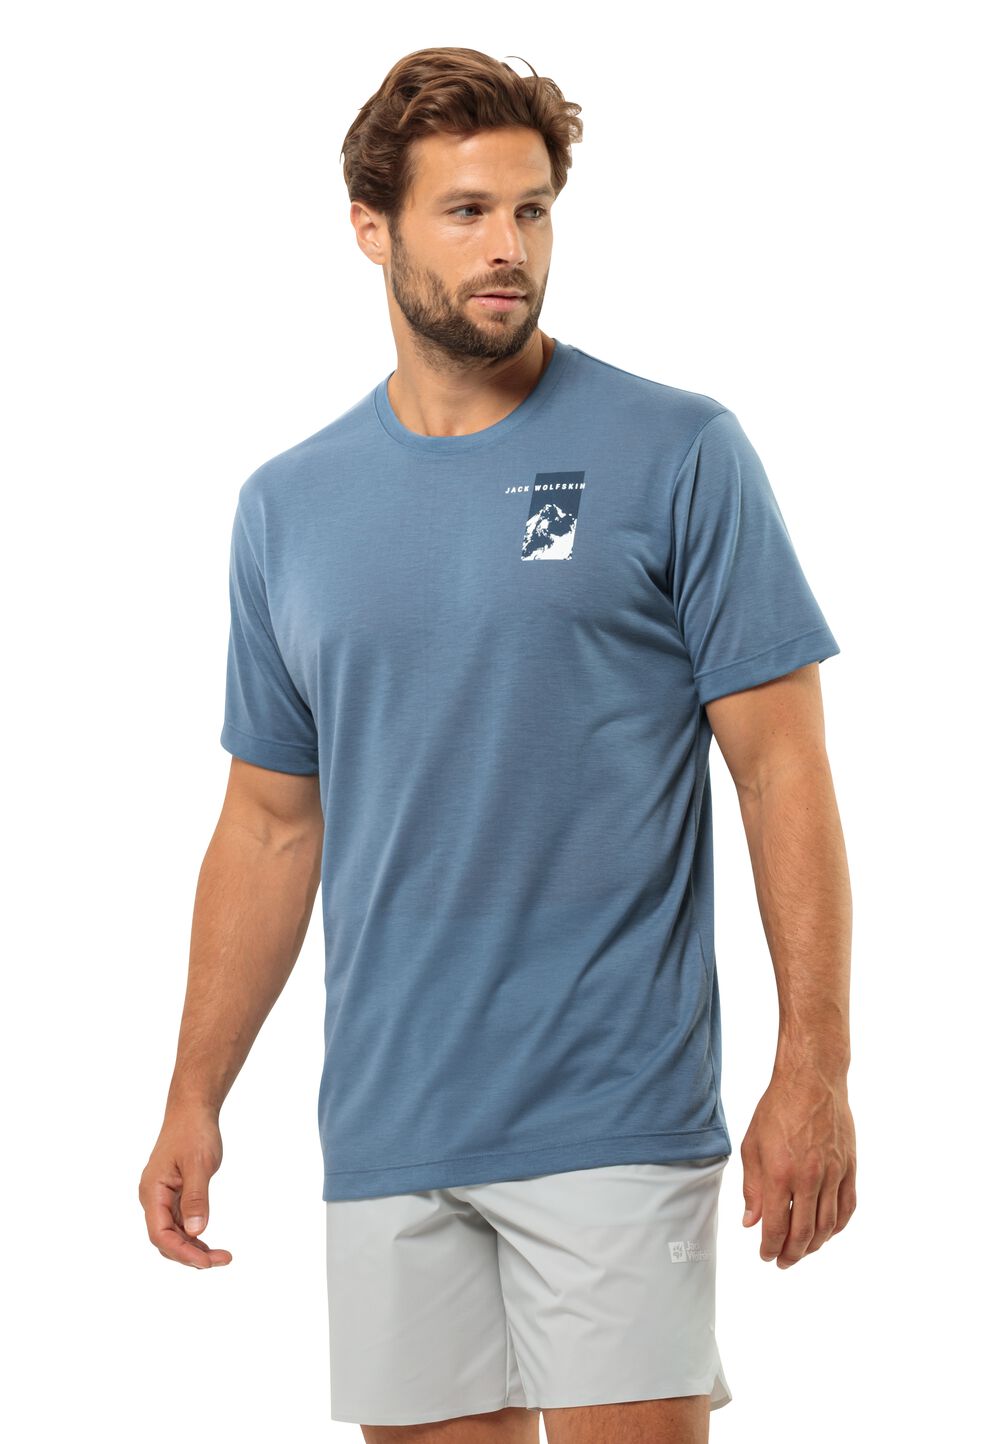 Jack Wolfskin Vonnan S S Graphic T-Shirt Men Functioneel shirt Heren 3XL elemental blue elemental blue